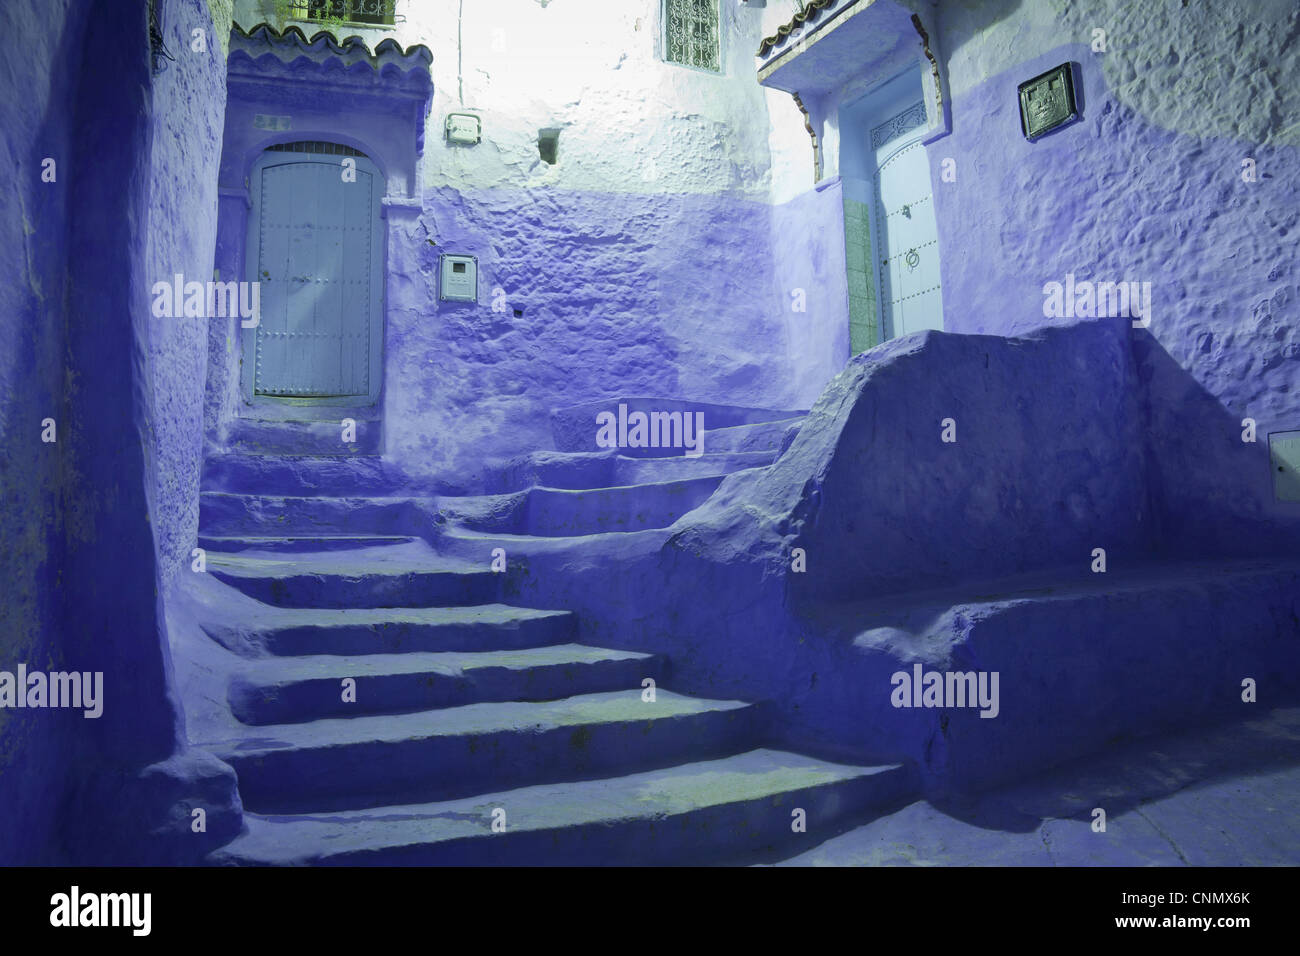 Blauen Türen und Treppe in Gasse der Stadt bei Nacht, Chefchaouen, Marokko, april Stockfoto